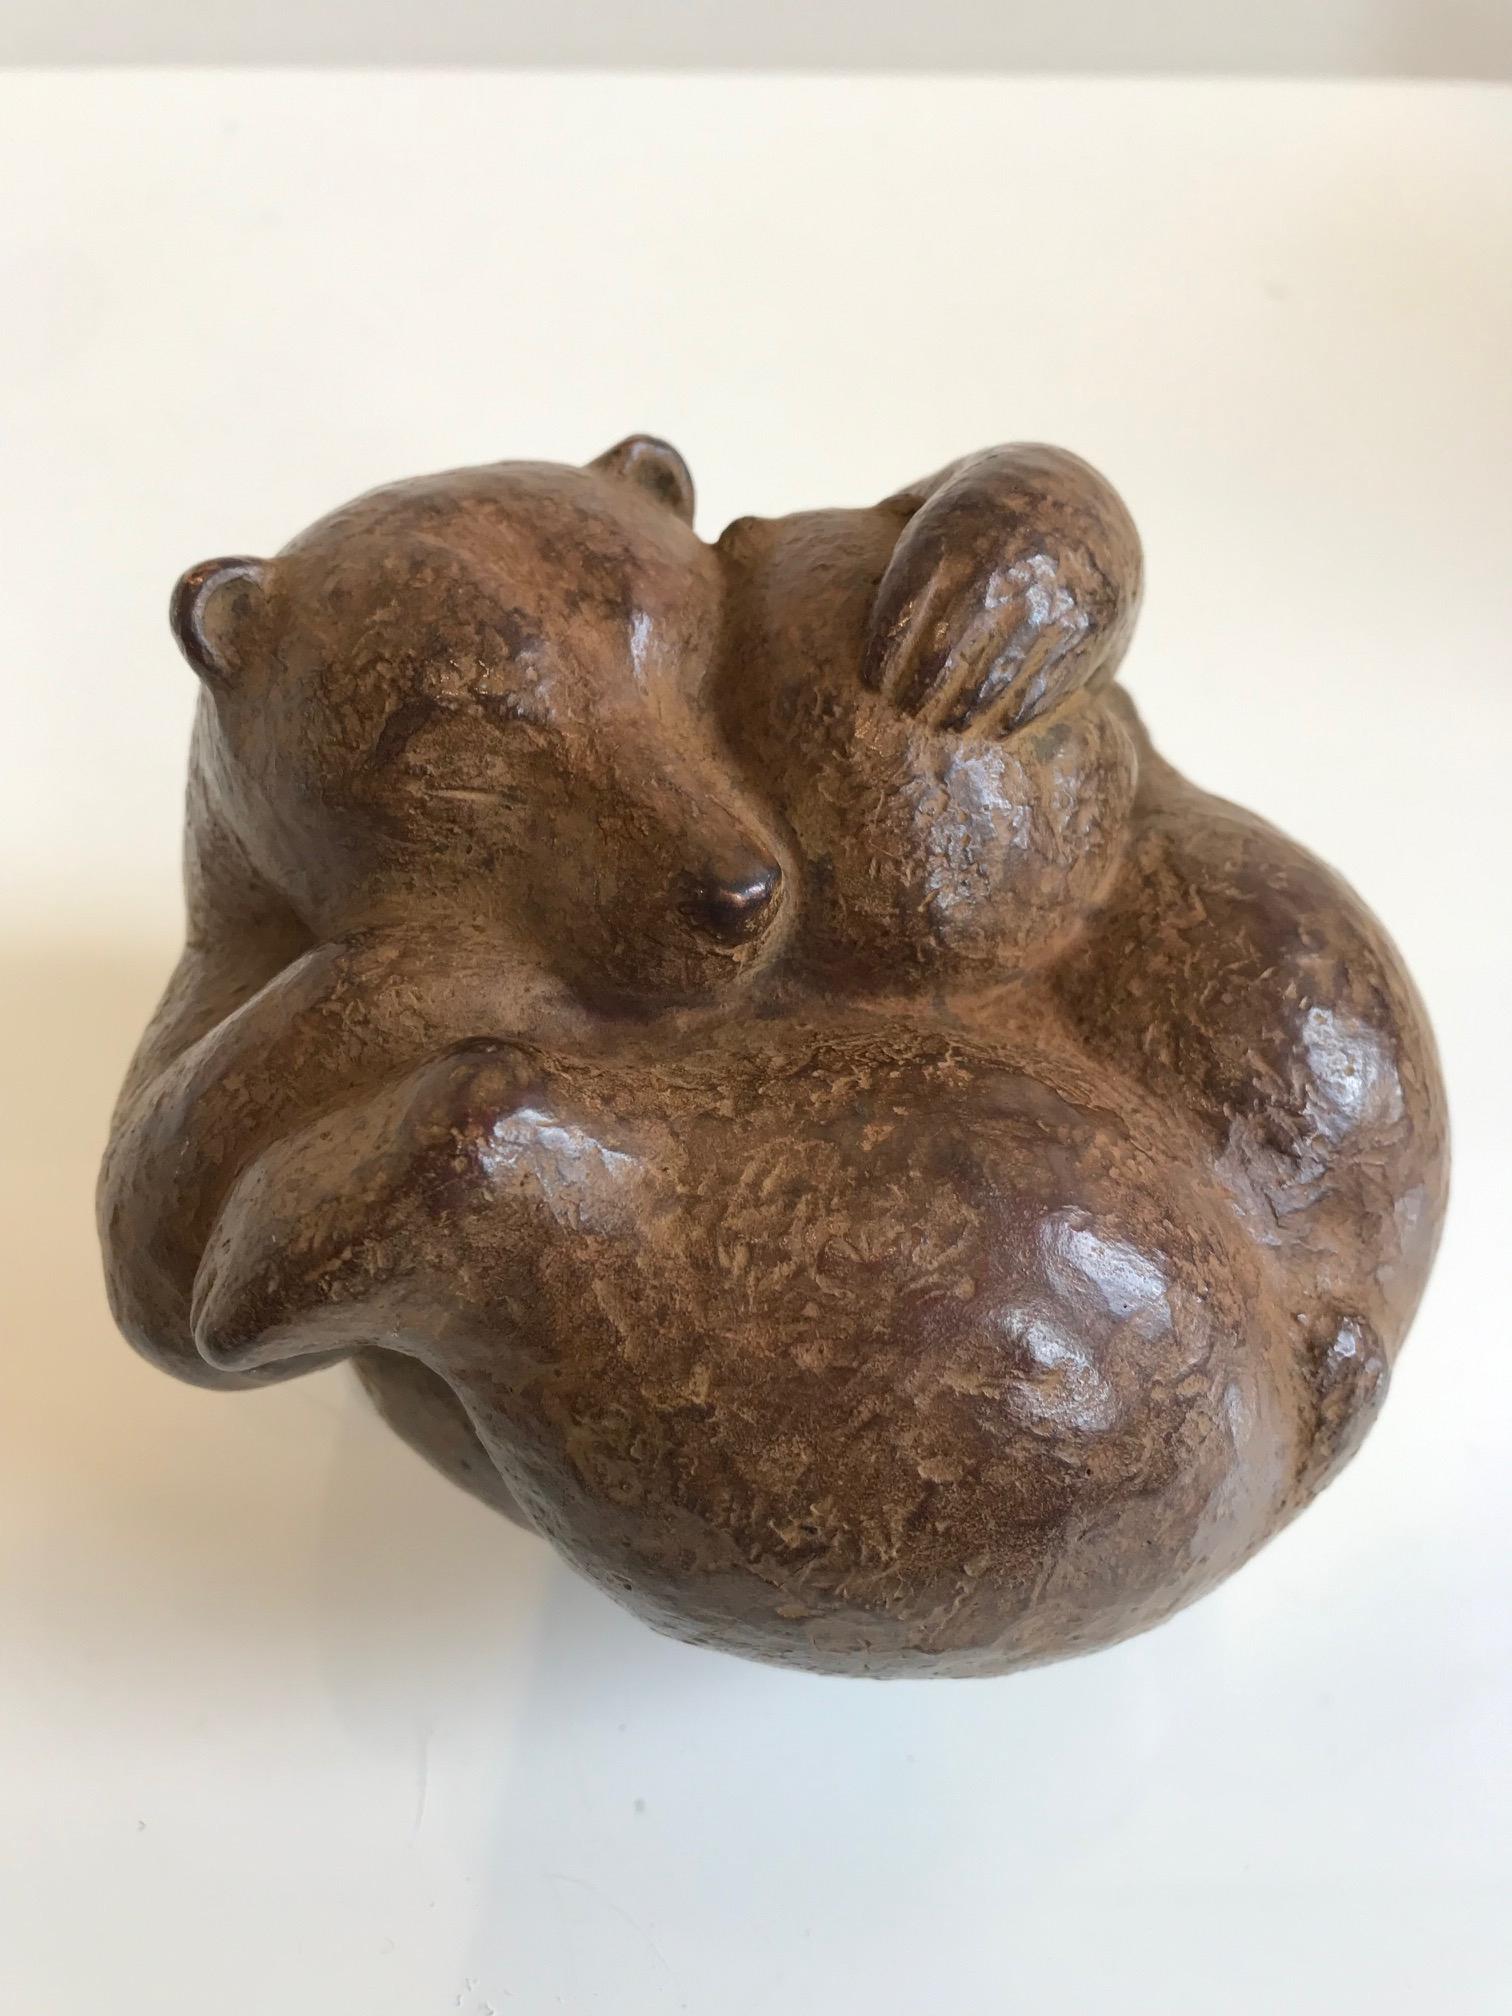 Figurative Sculpture Karin Beek - ''Ours avec ourson'' Sculpture hollandaise contemporaine en bronze d'un ours brun avec son ourson